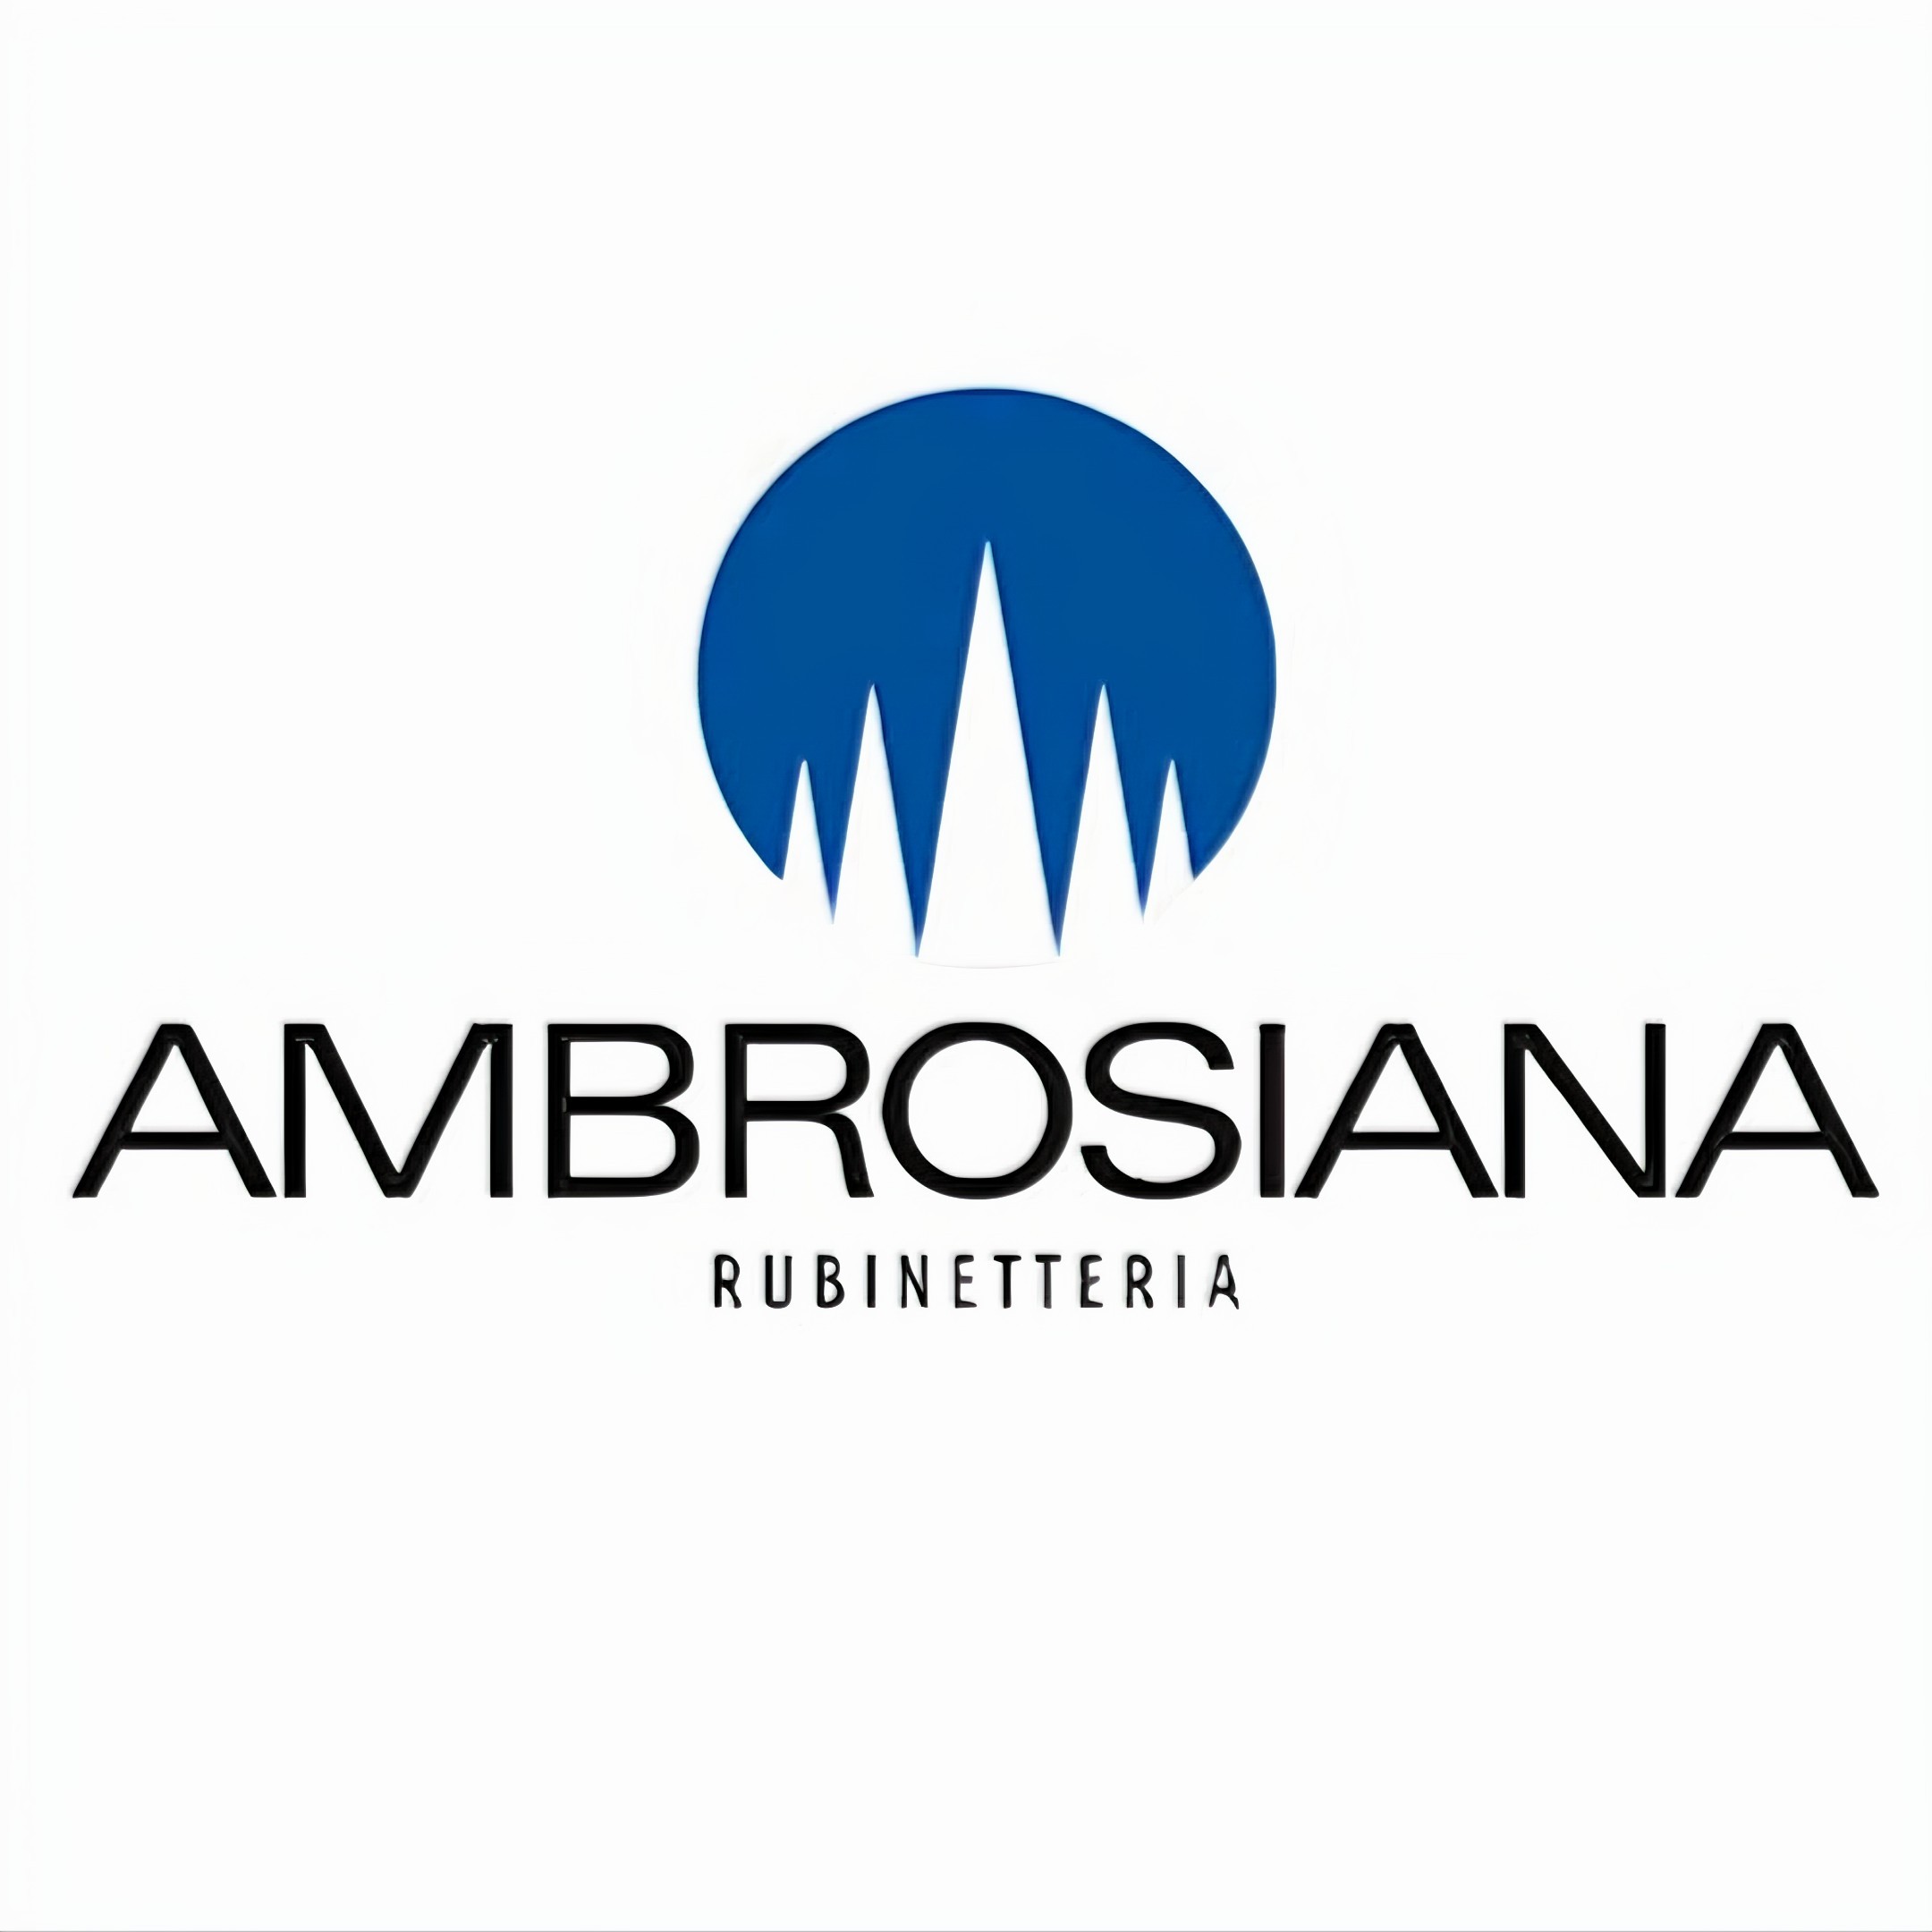 Ambrosiana